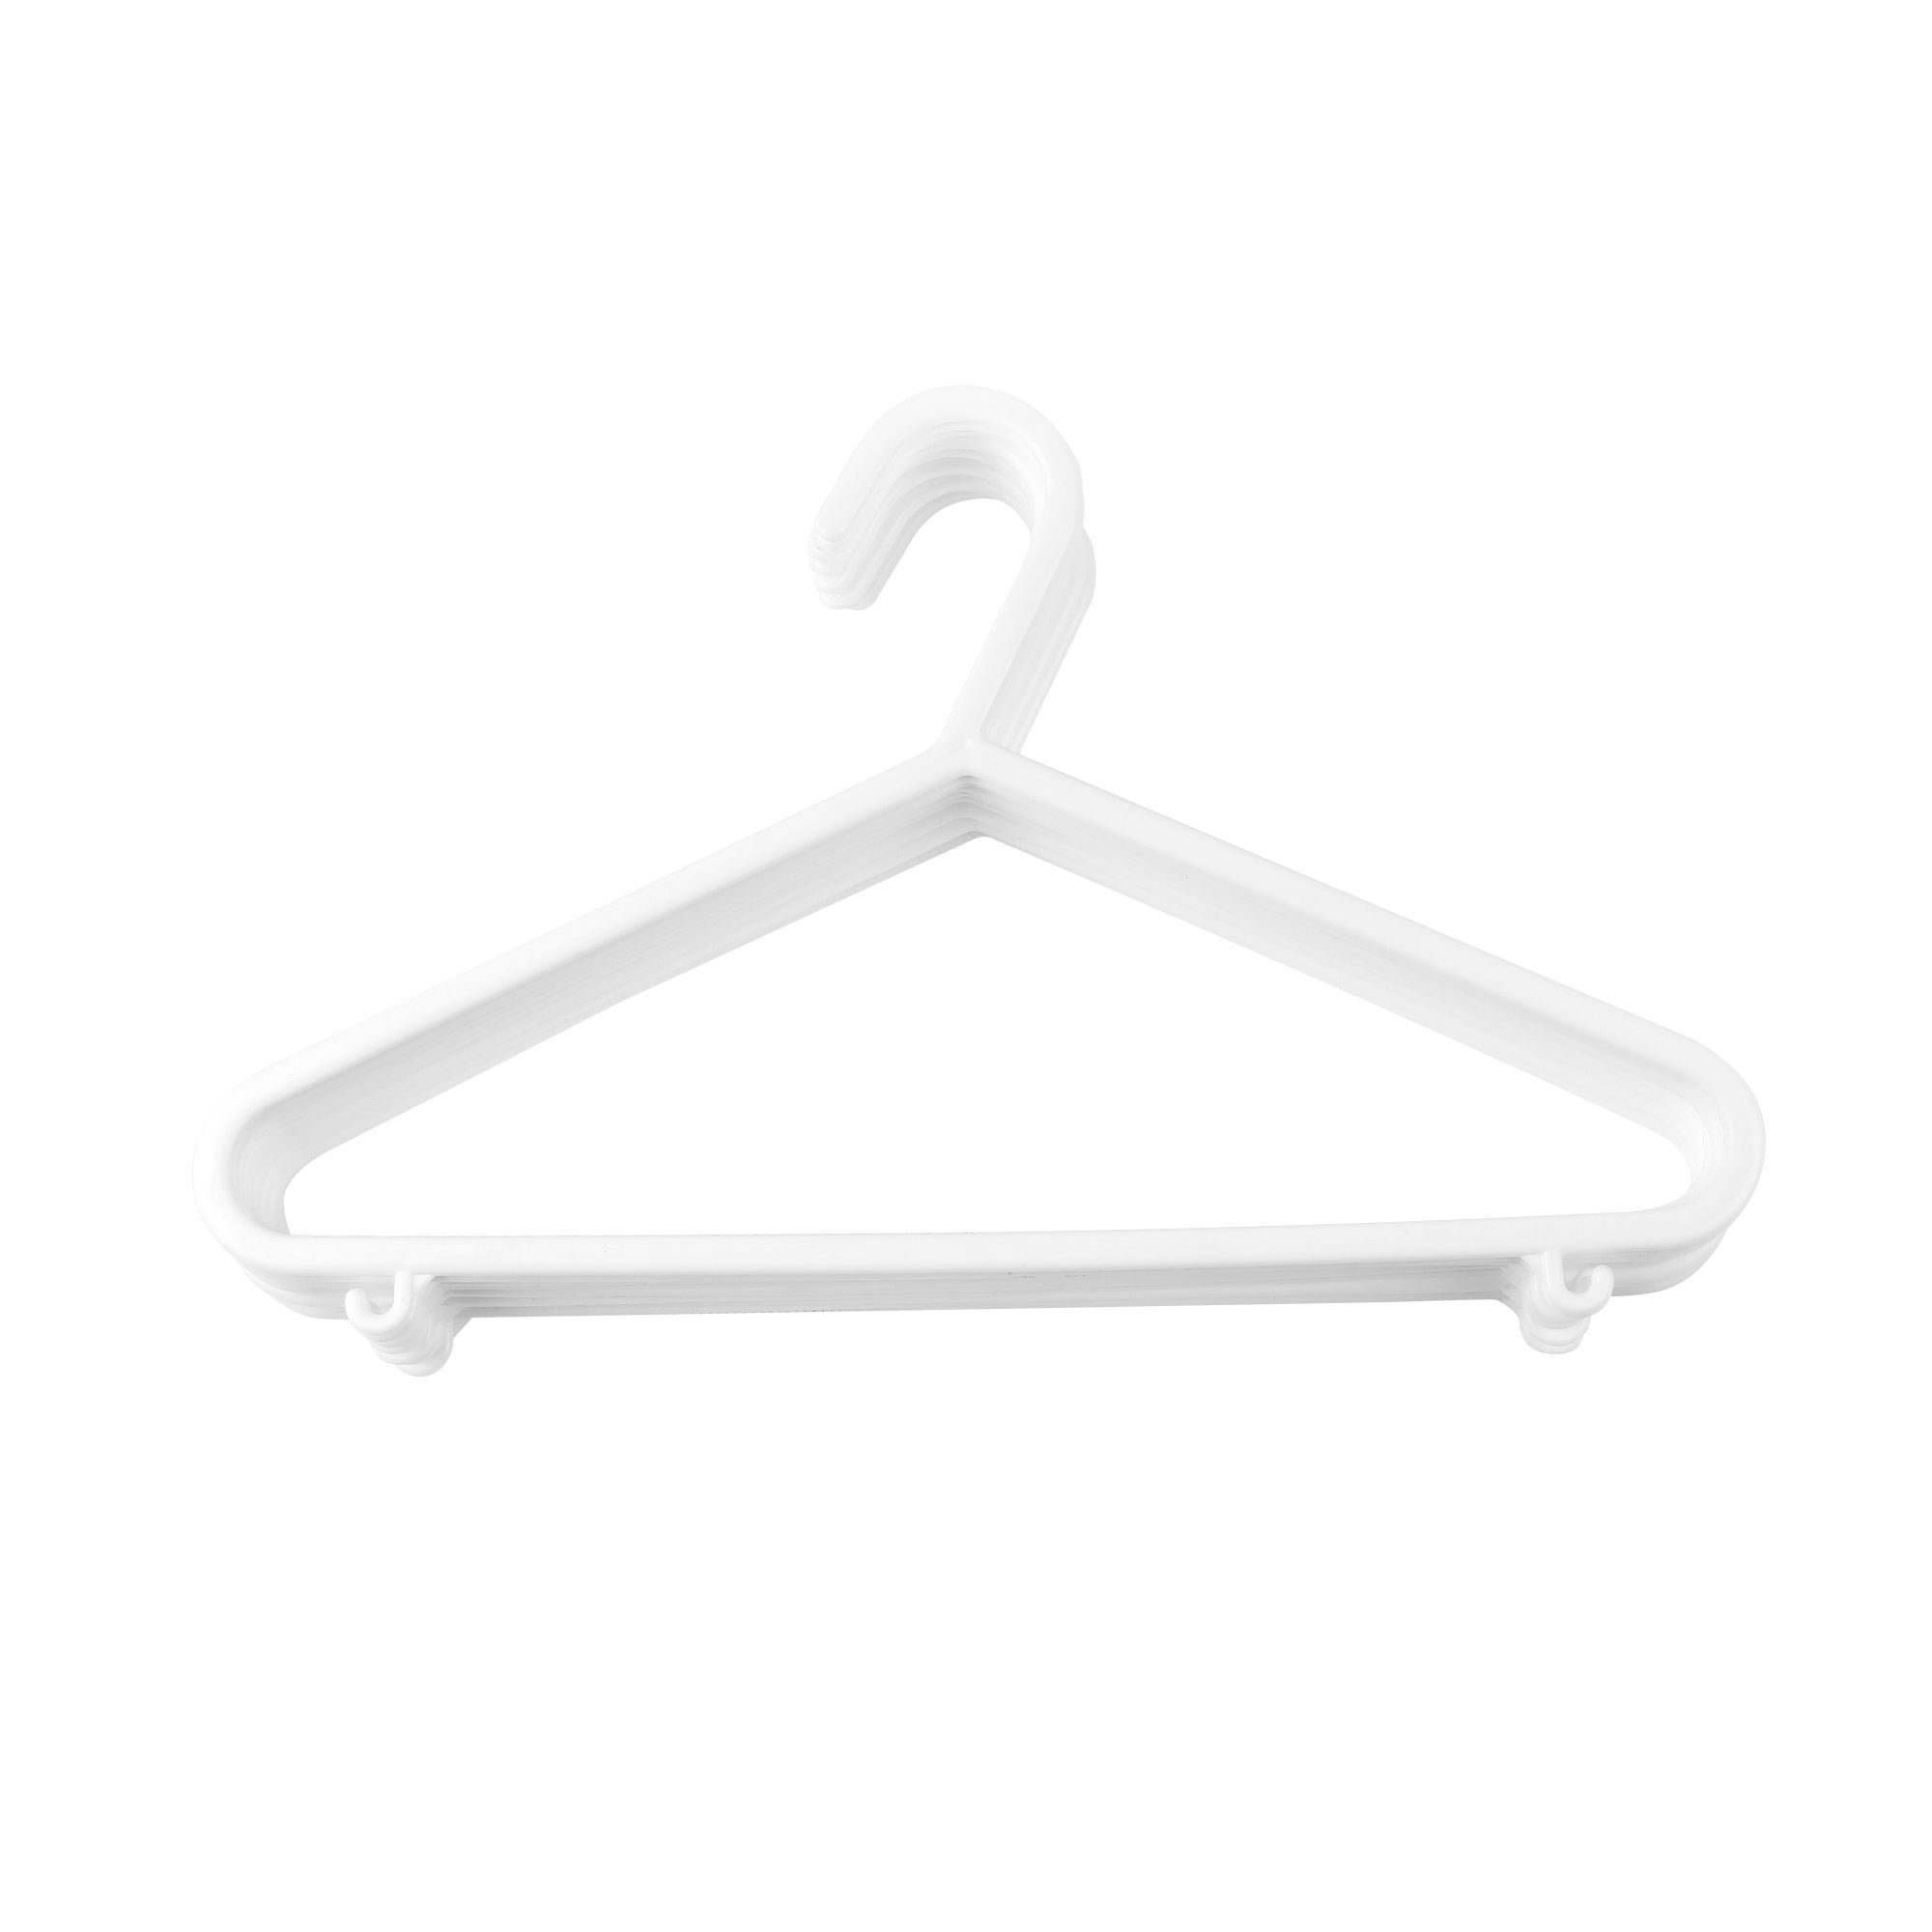 Plastic Baby Hangers Infant Clothes Hangers 100 Pack Children Hangers-black